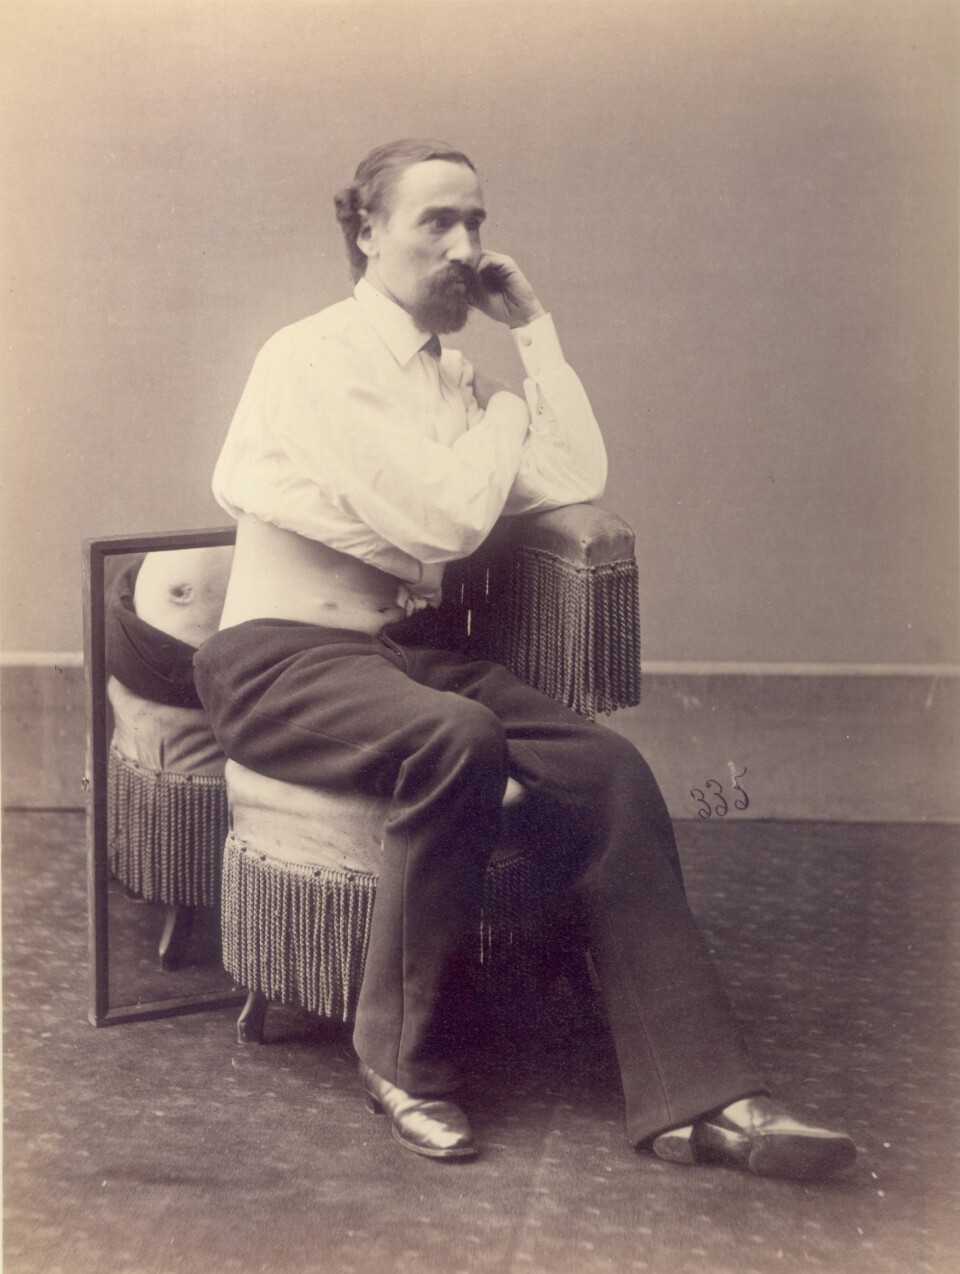 Sersjant L. Morell, skadet av skudd i 1863. (Foto: Otis Historical Archives, National Museum of Health and Medicine)